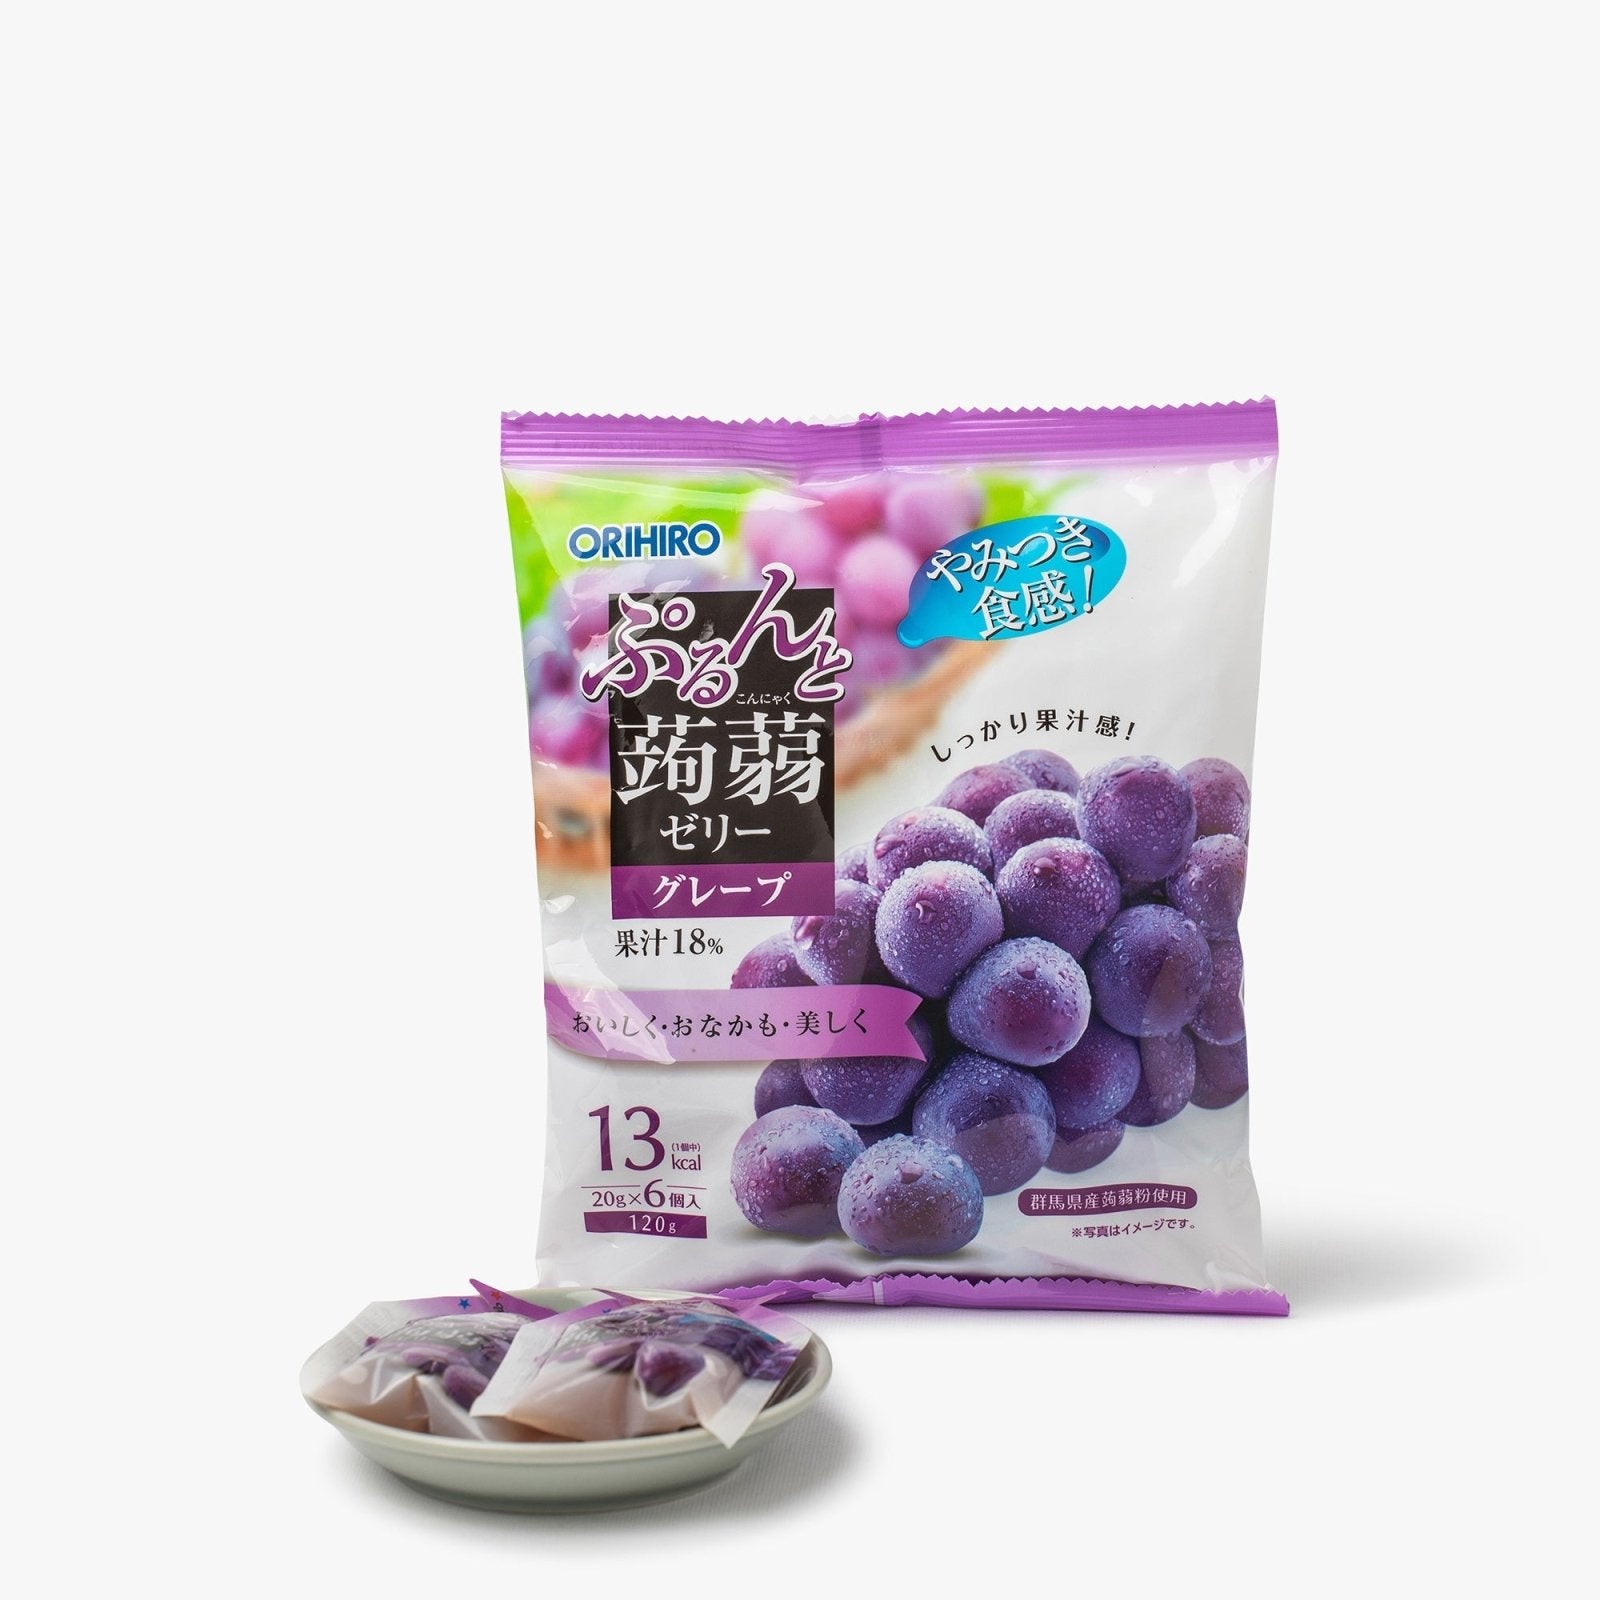 Gelées de konjac au raisin - 120g - Orihiro - iRASSHAi